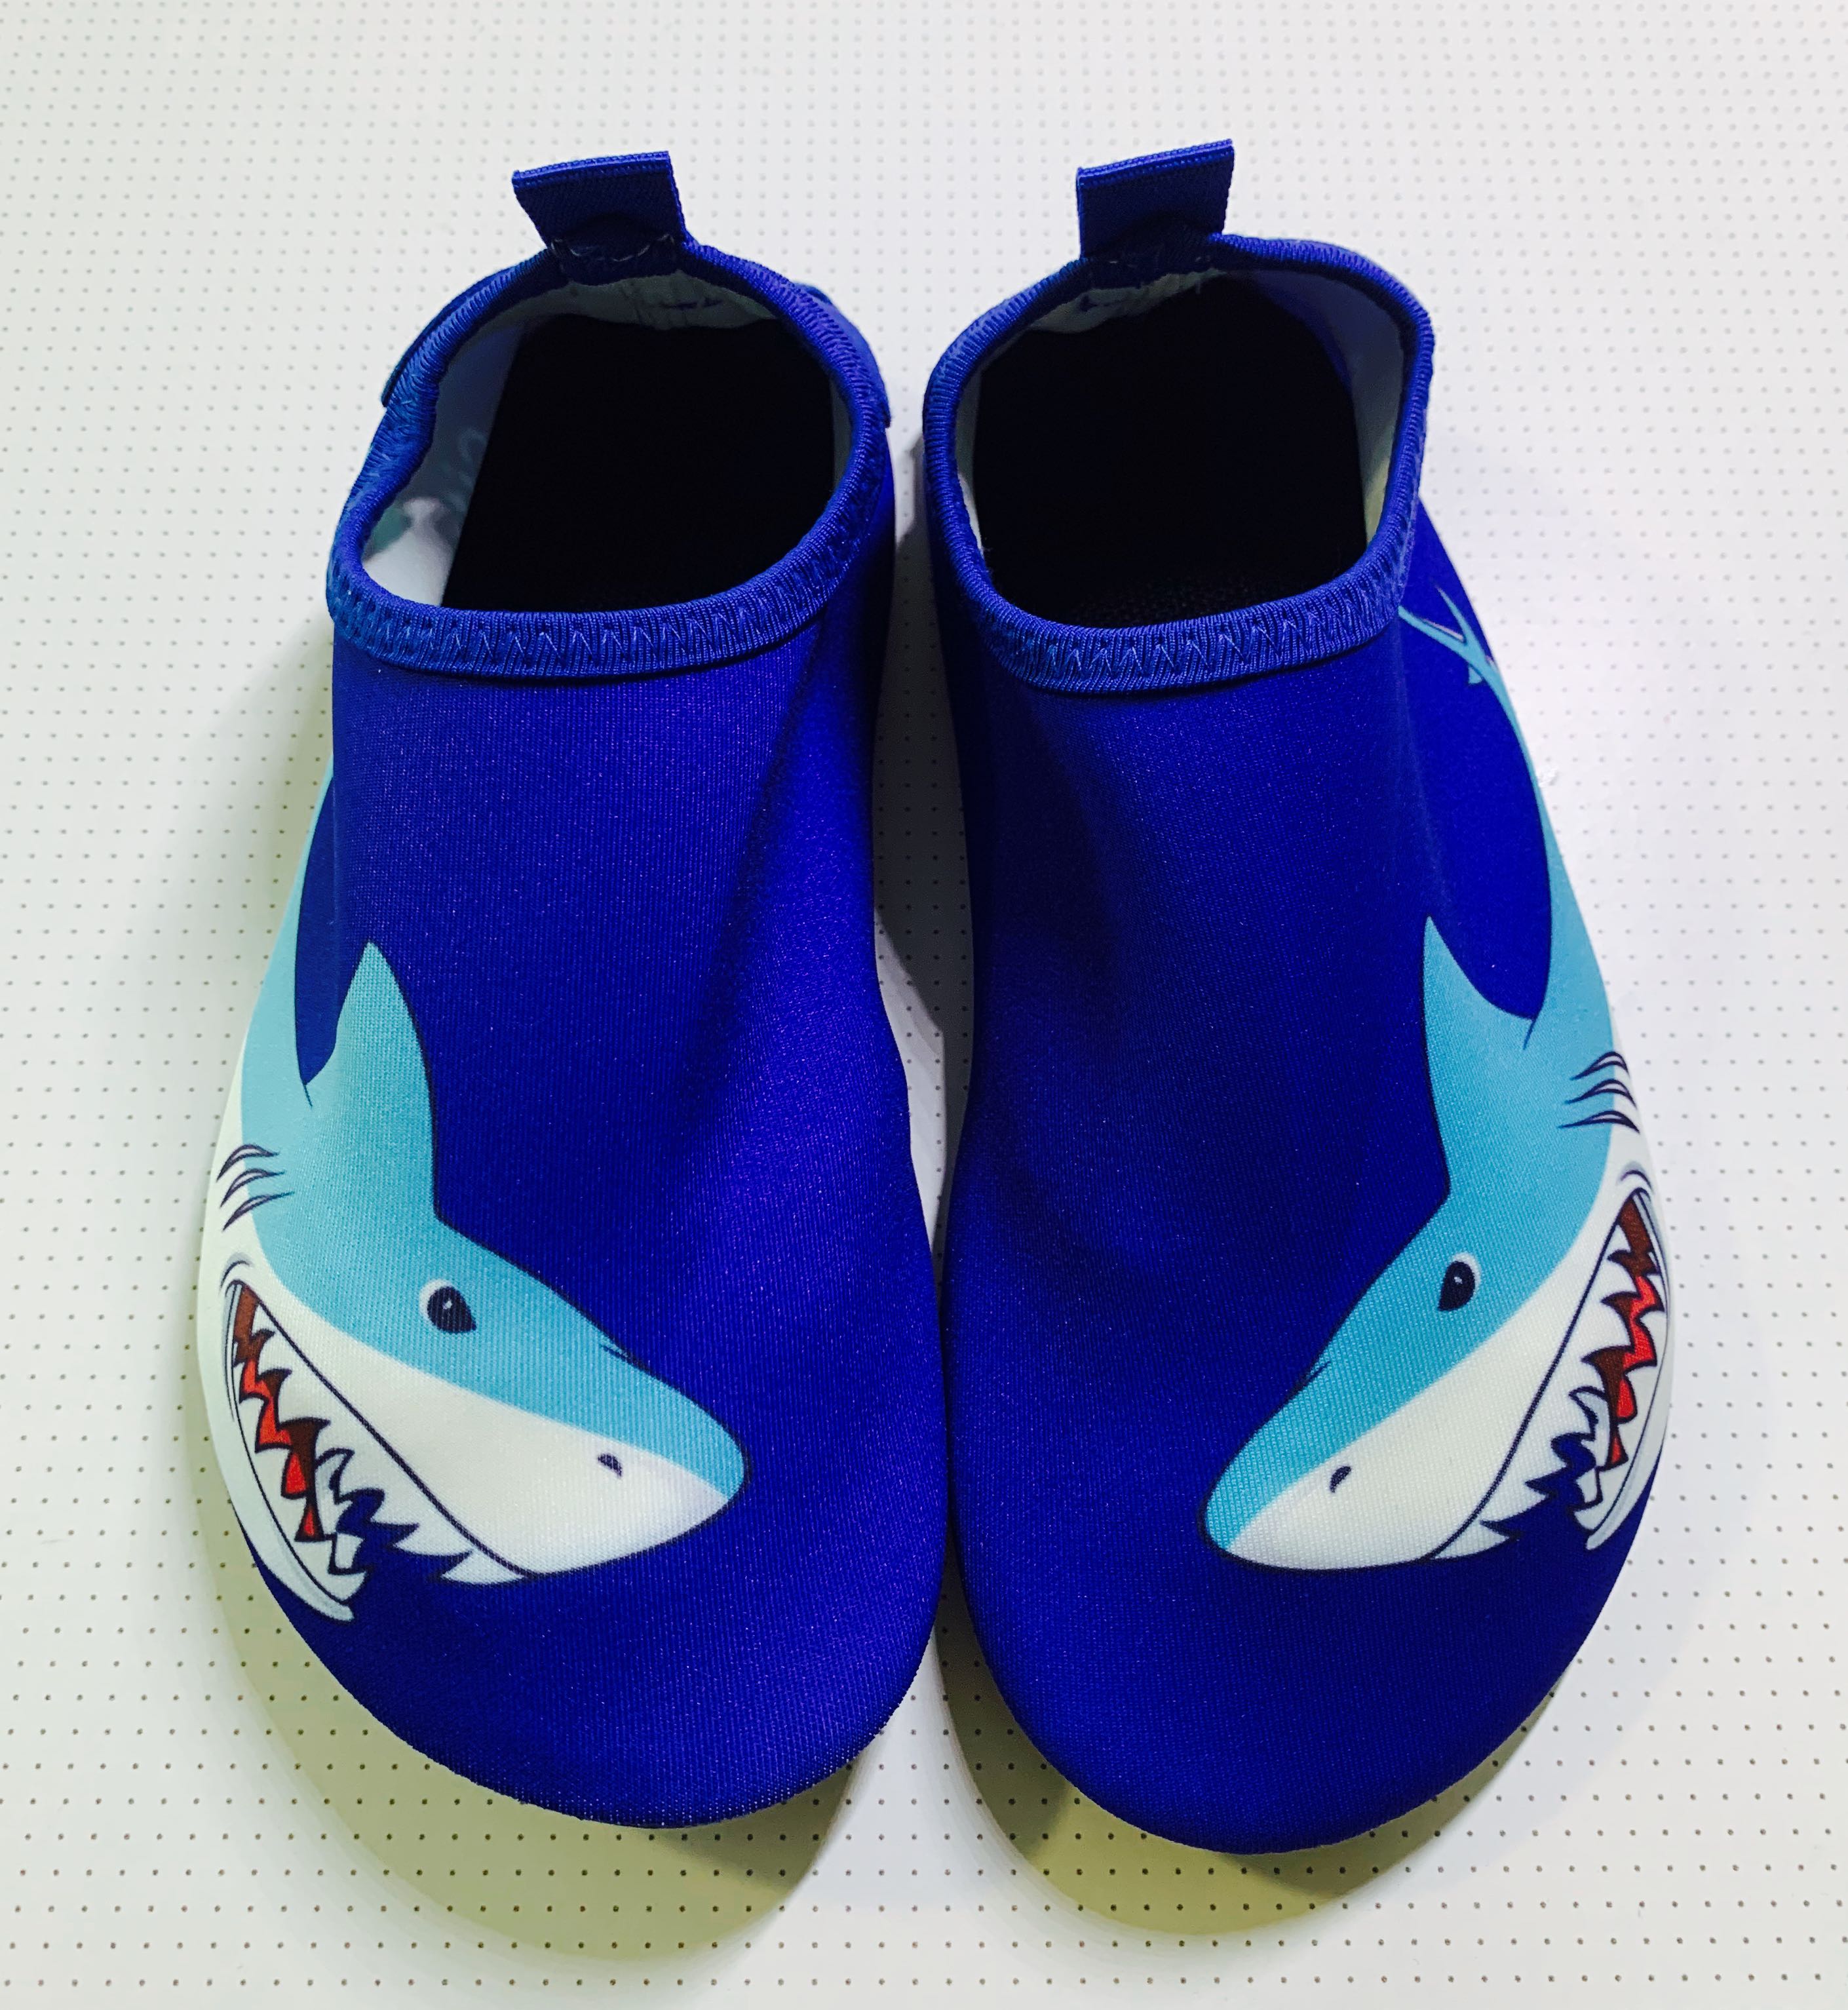 boys aqua shoes